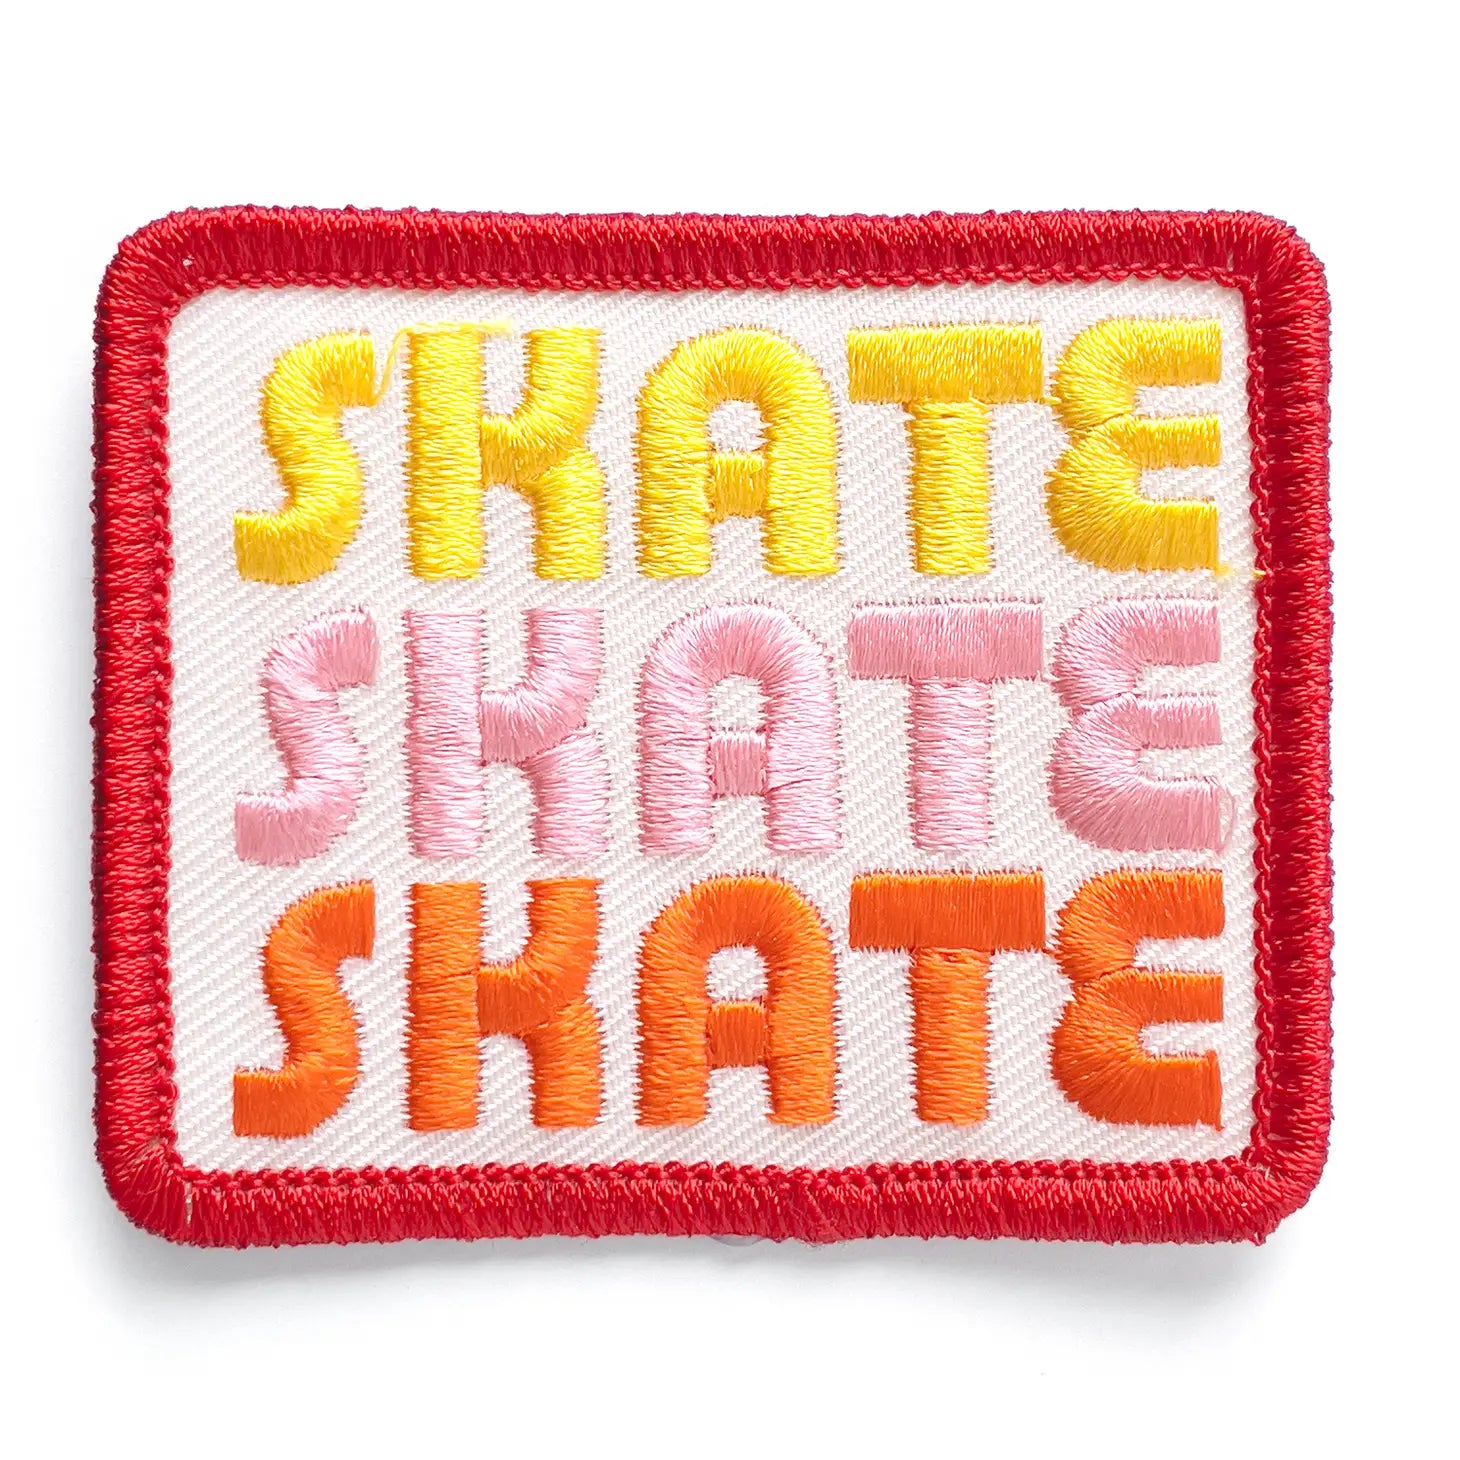 "Skate Skate Skate" patch